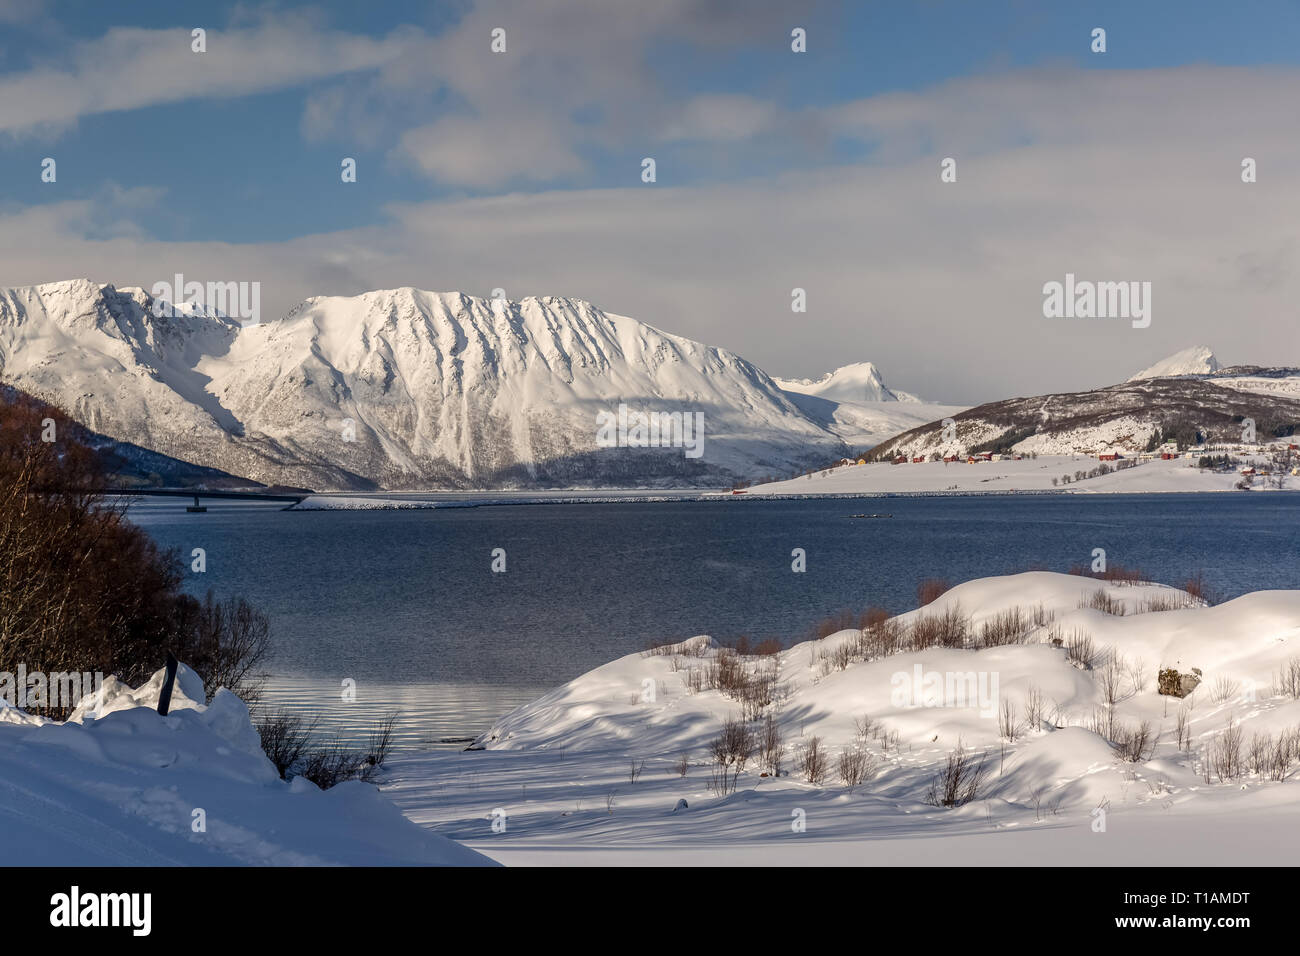 Ein Blick auf die norwegischen Fjorde im Winter, die schneebedeckten Berge und Inseln. Stockfoto